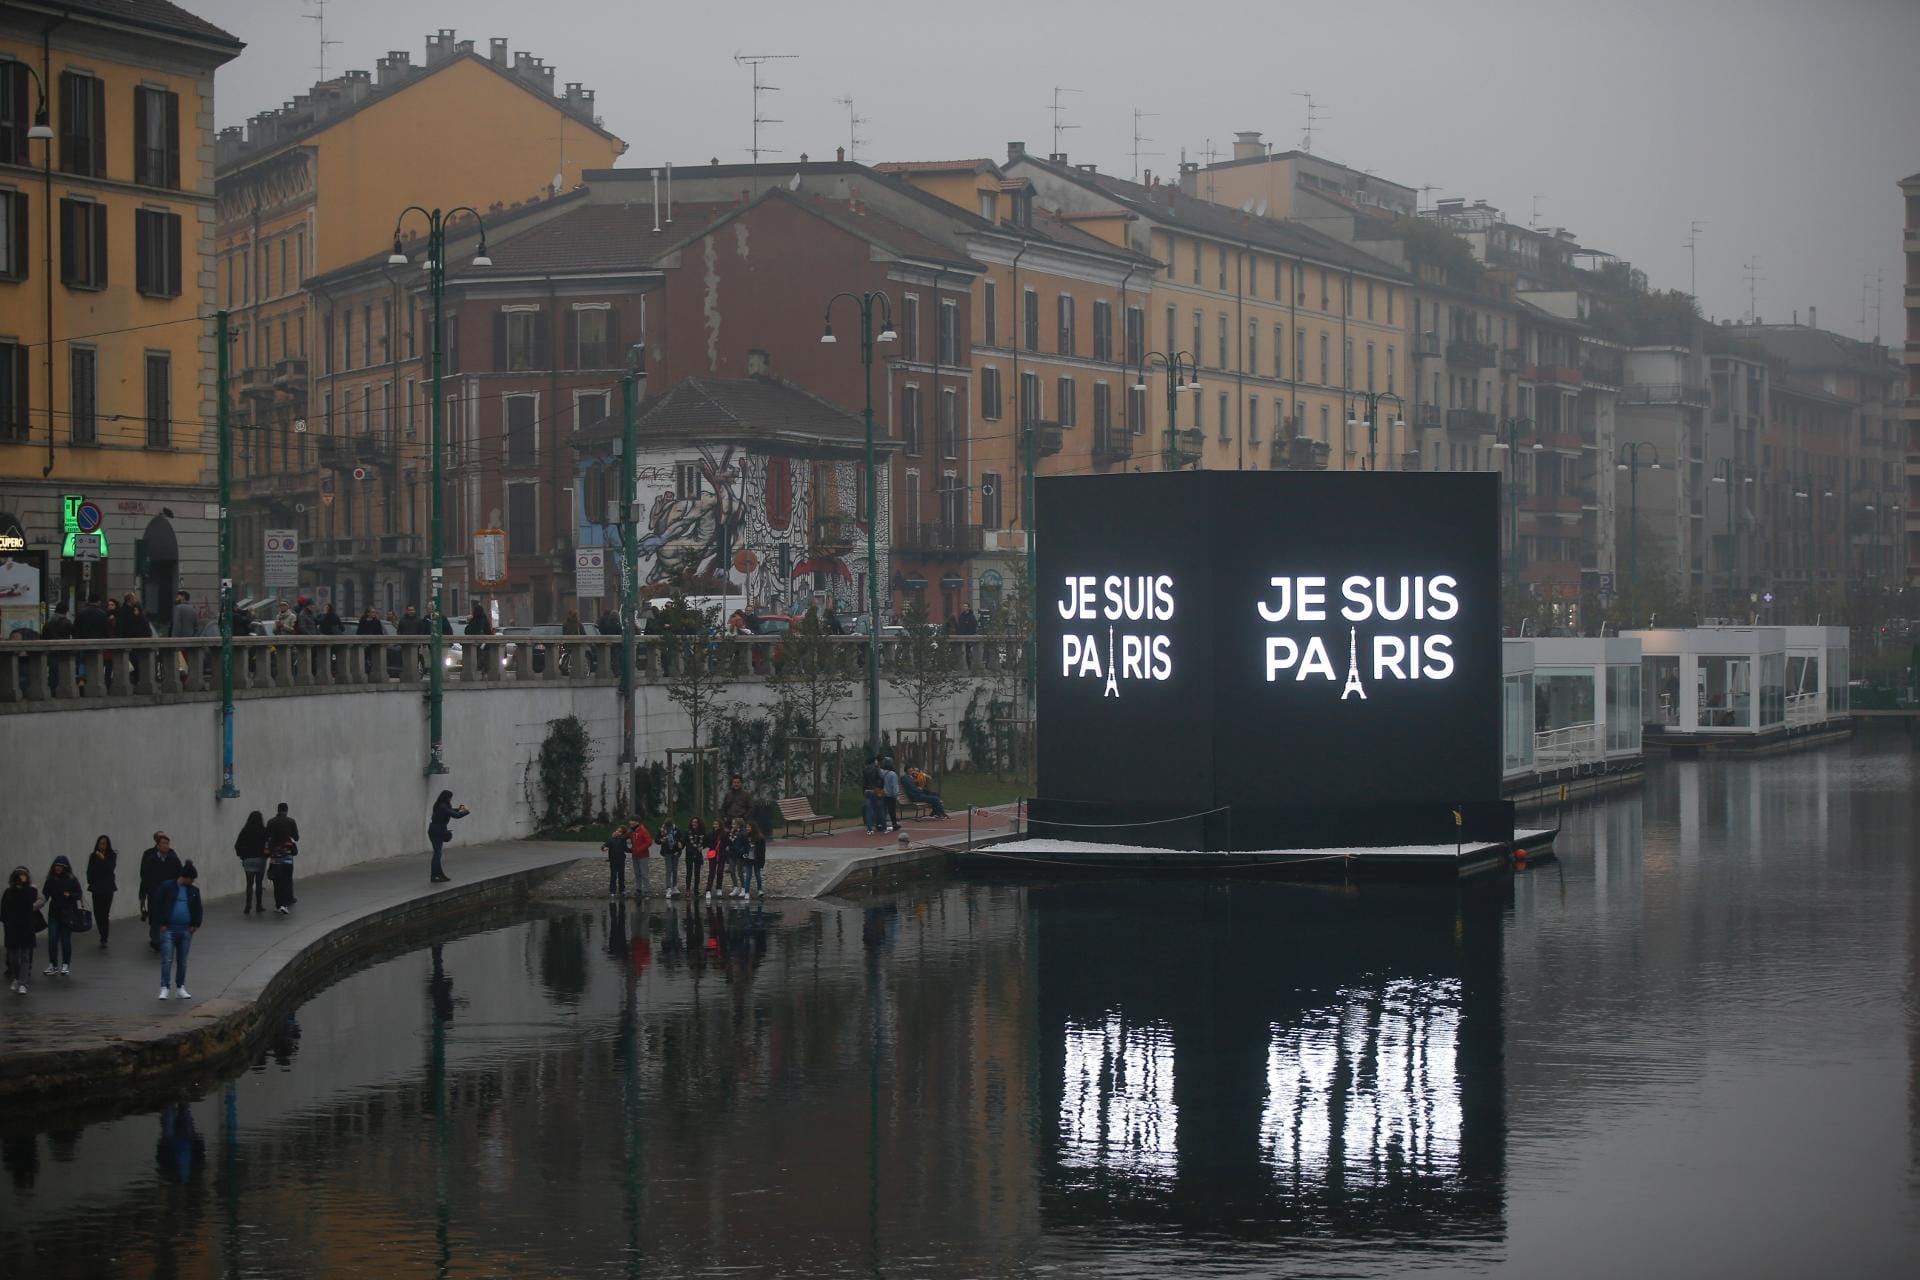 Im Ausland wie hier in Mailand wird ebenfalls der Opfer gedacht. Auf einem Kanal wurde eine elektronische Schrifttafel mit der Aufschrift "Ich bin Paris" aufgestellt - in Anlehnung an den Slogan "Ich bin Charlie", mit dem nach dem Attentat auf das französische Satiremagazin "Charlie Hebdo" vom Januar dieses Jahres Solidarität bekundet wurde.